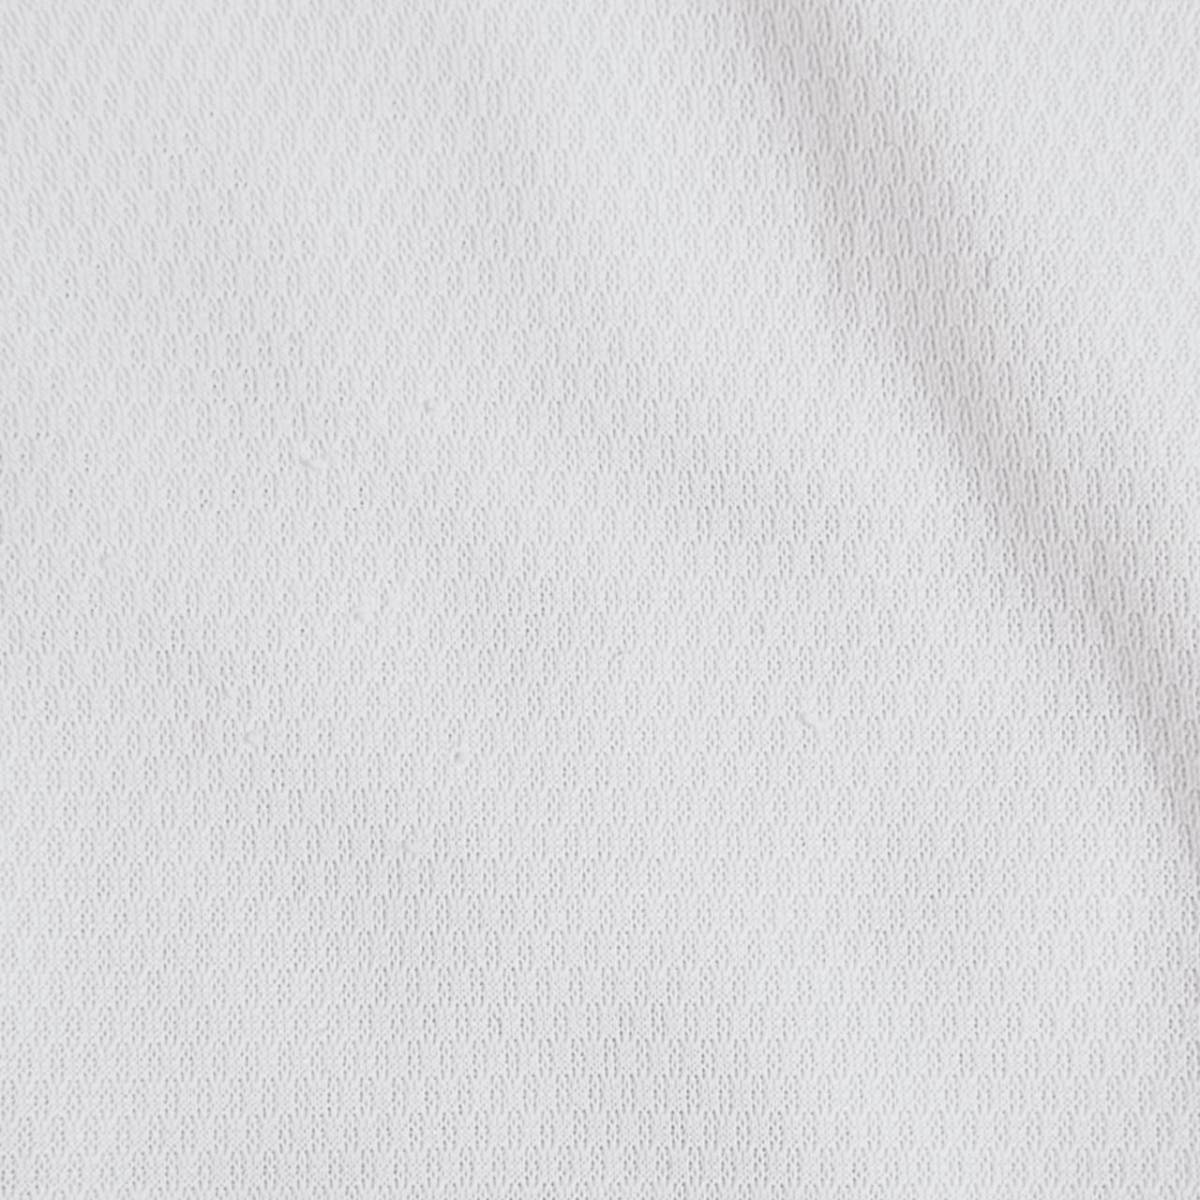 メンズXL JUN&ROPE 半袖ポロシャツ 白 ホワイト カジュアル スポーツ シンプル ワンポイント ストライプ ジュン&ロペ 【13687】